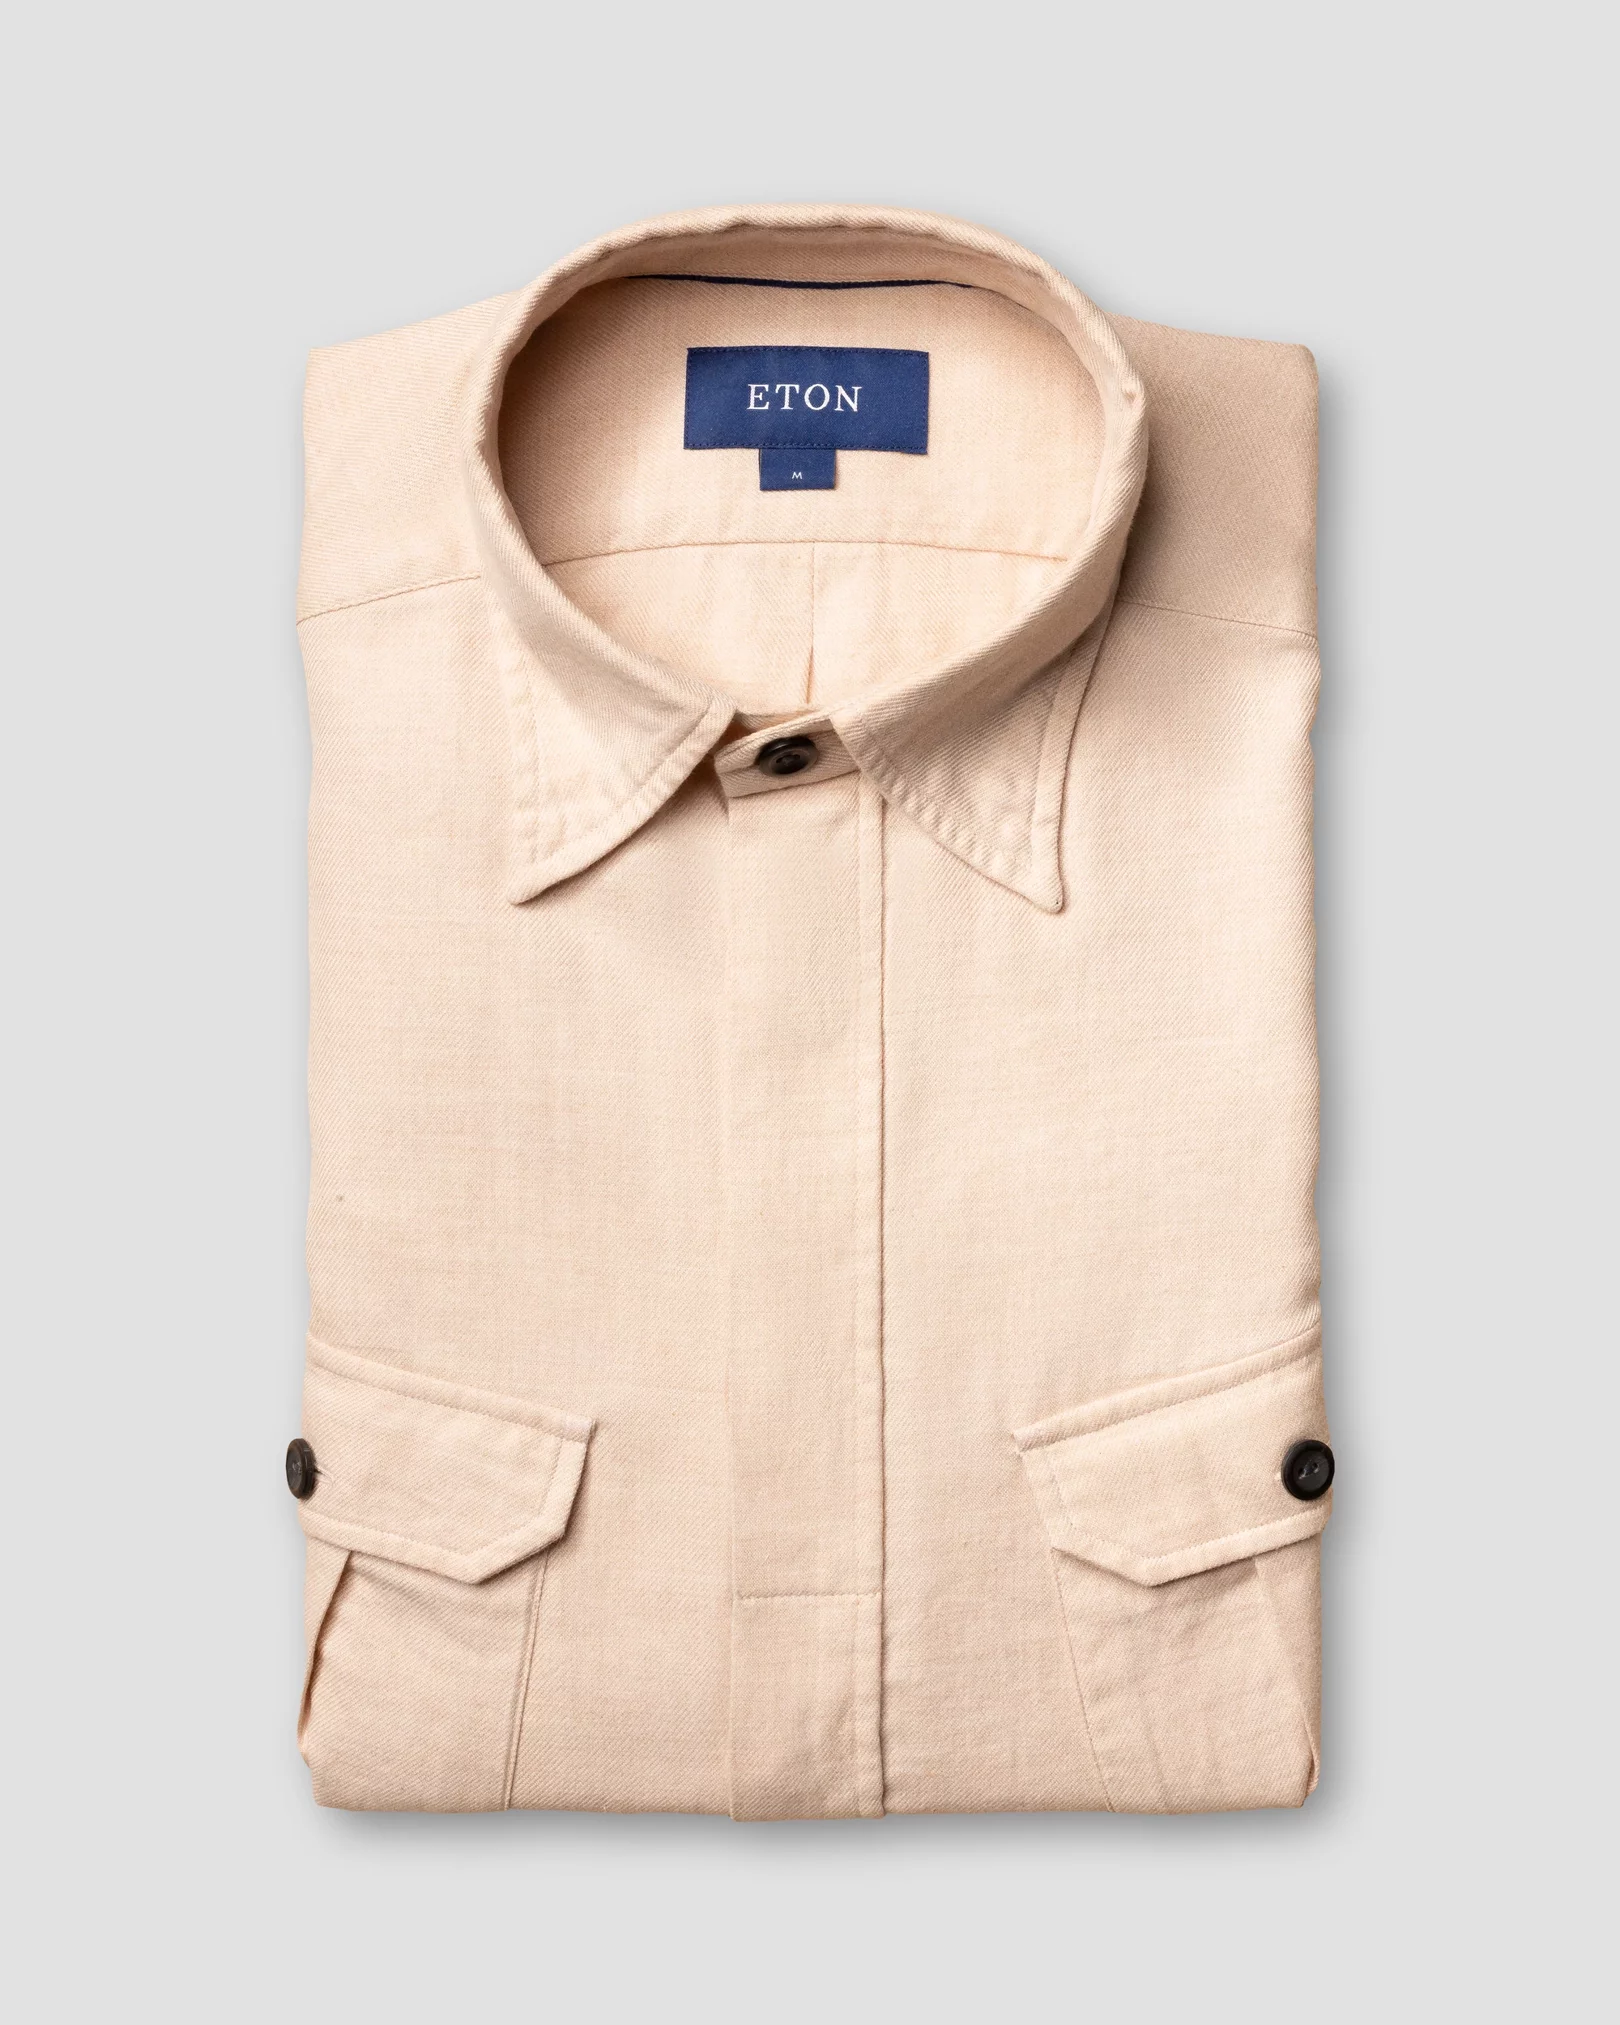 Eton - beige four pocket overshirt